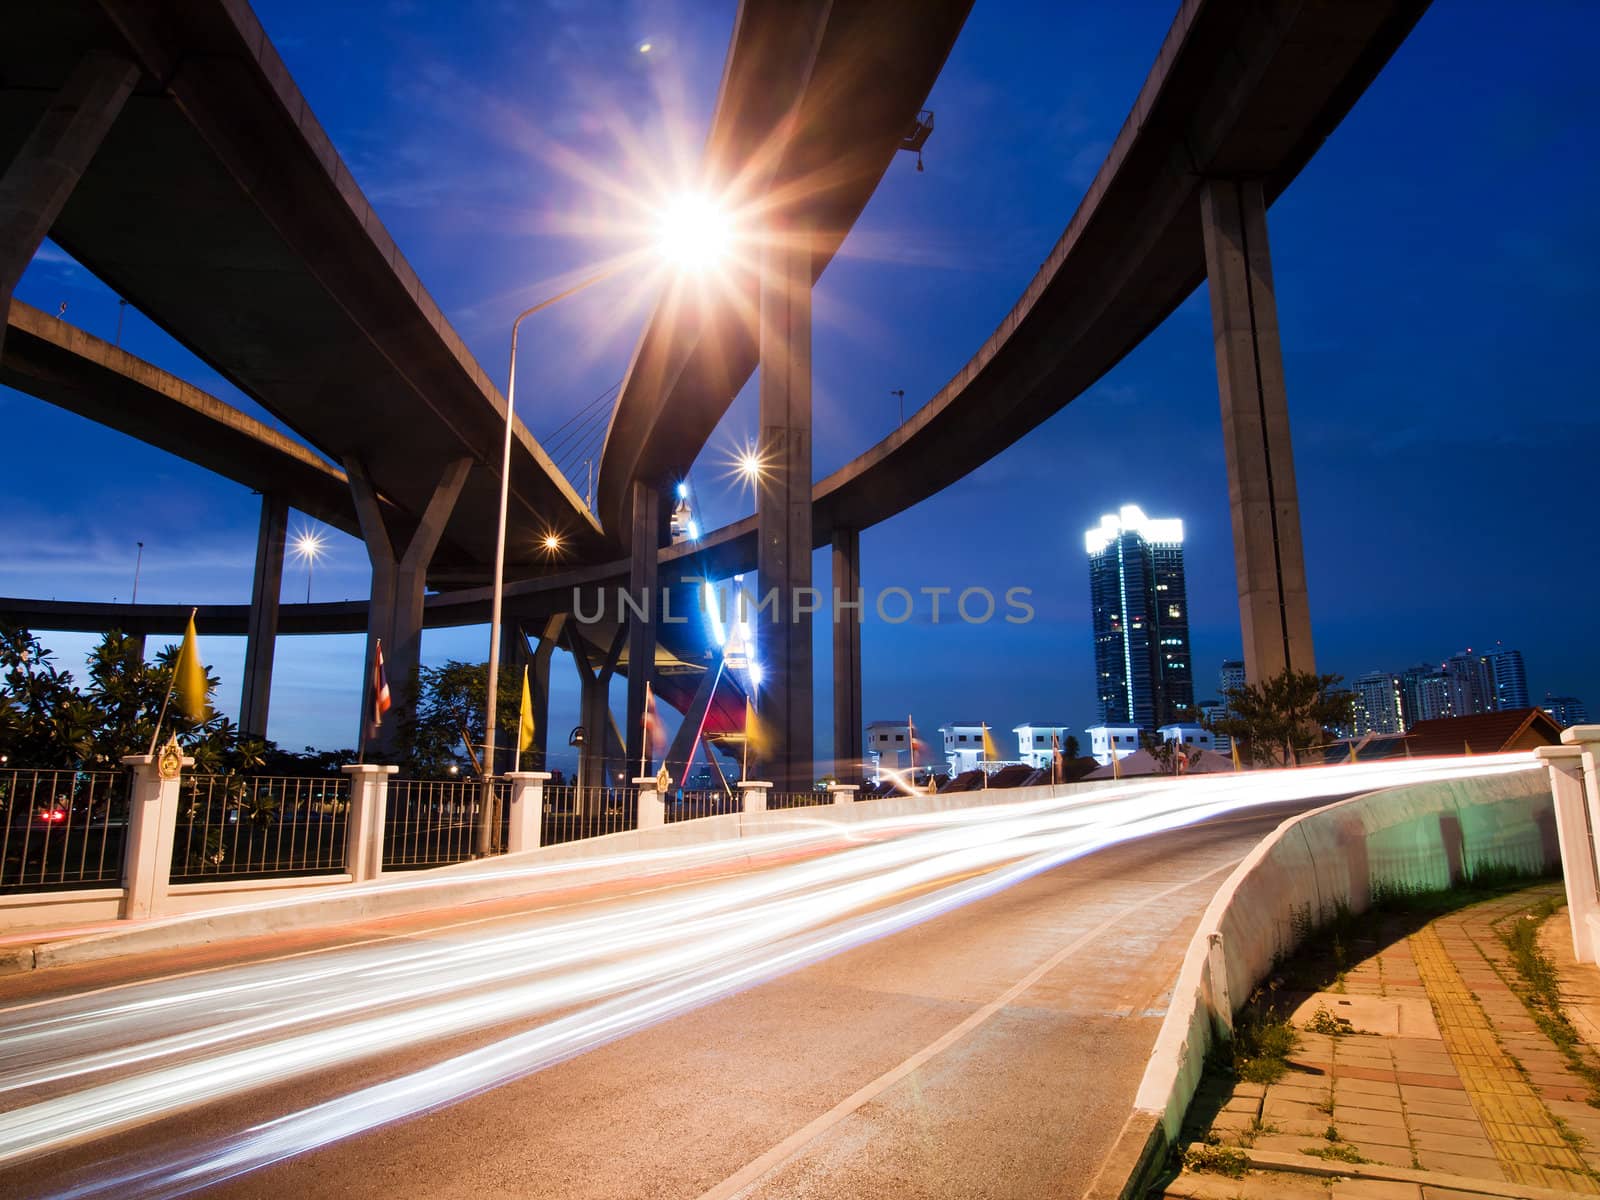 Bhumibol Bridge, The Industrial Ring Road Bridge in Bangkok. Long Exposure at night